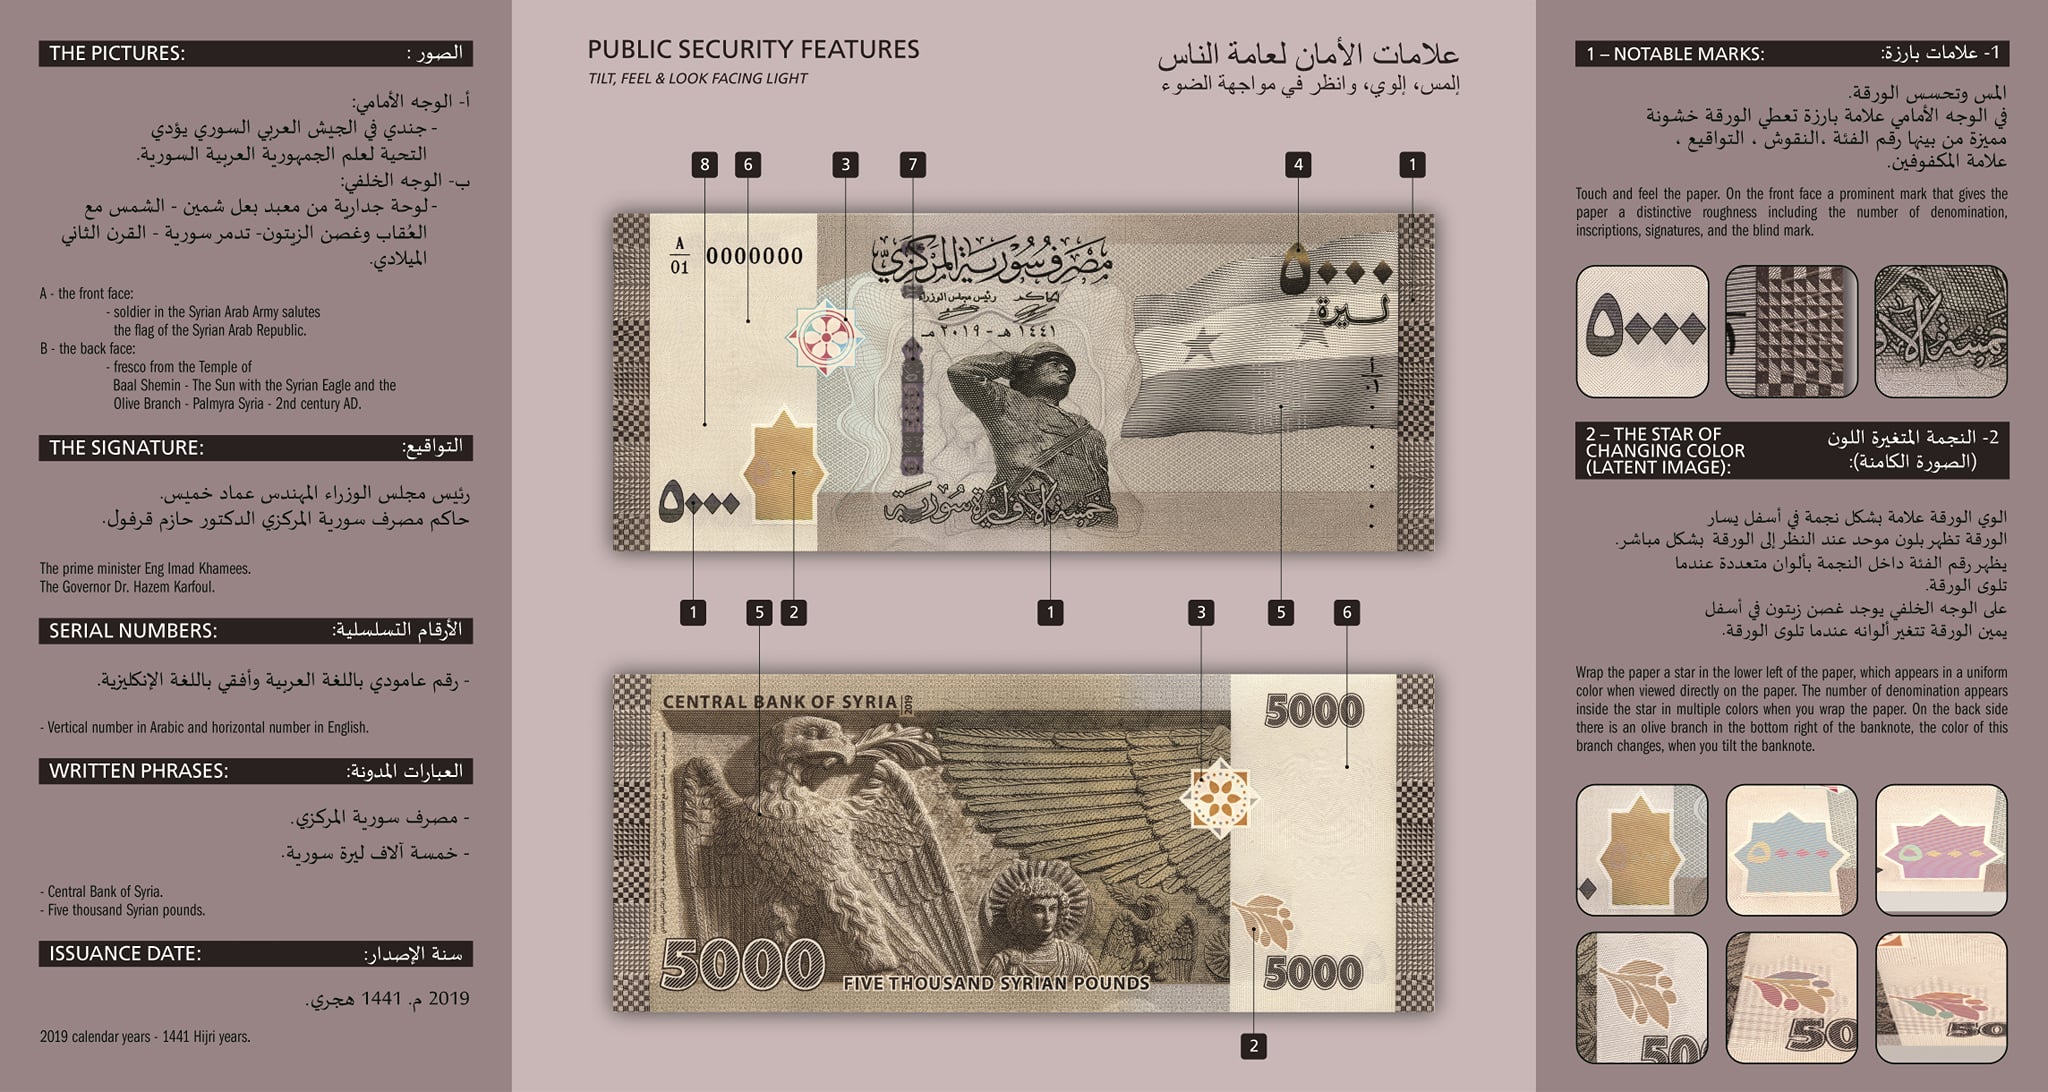 علامات ومميزات الامان لفئة الـ 5000 ليرة السورية الجديدة